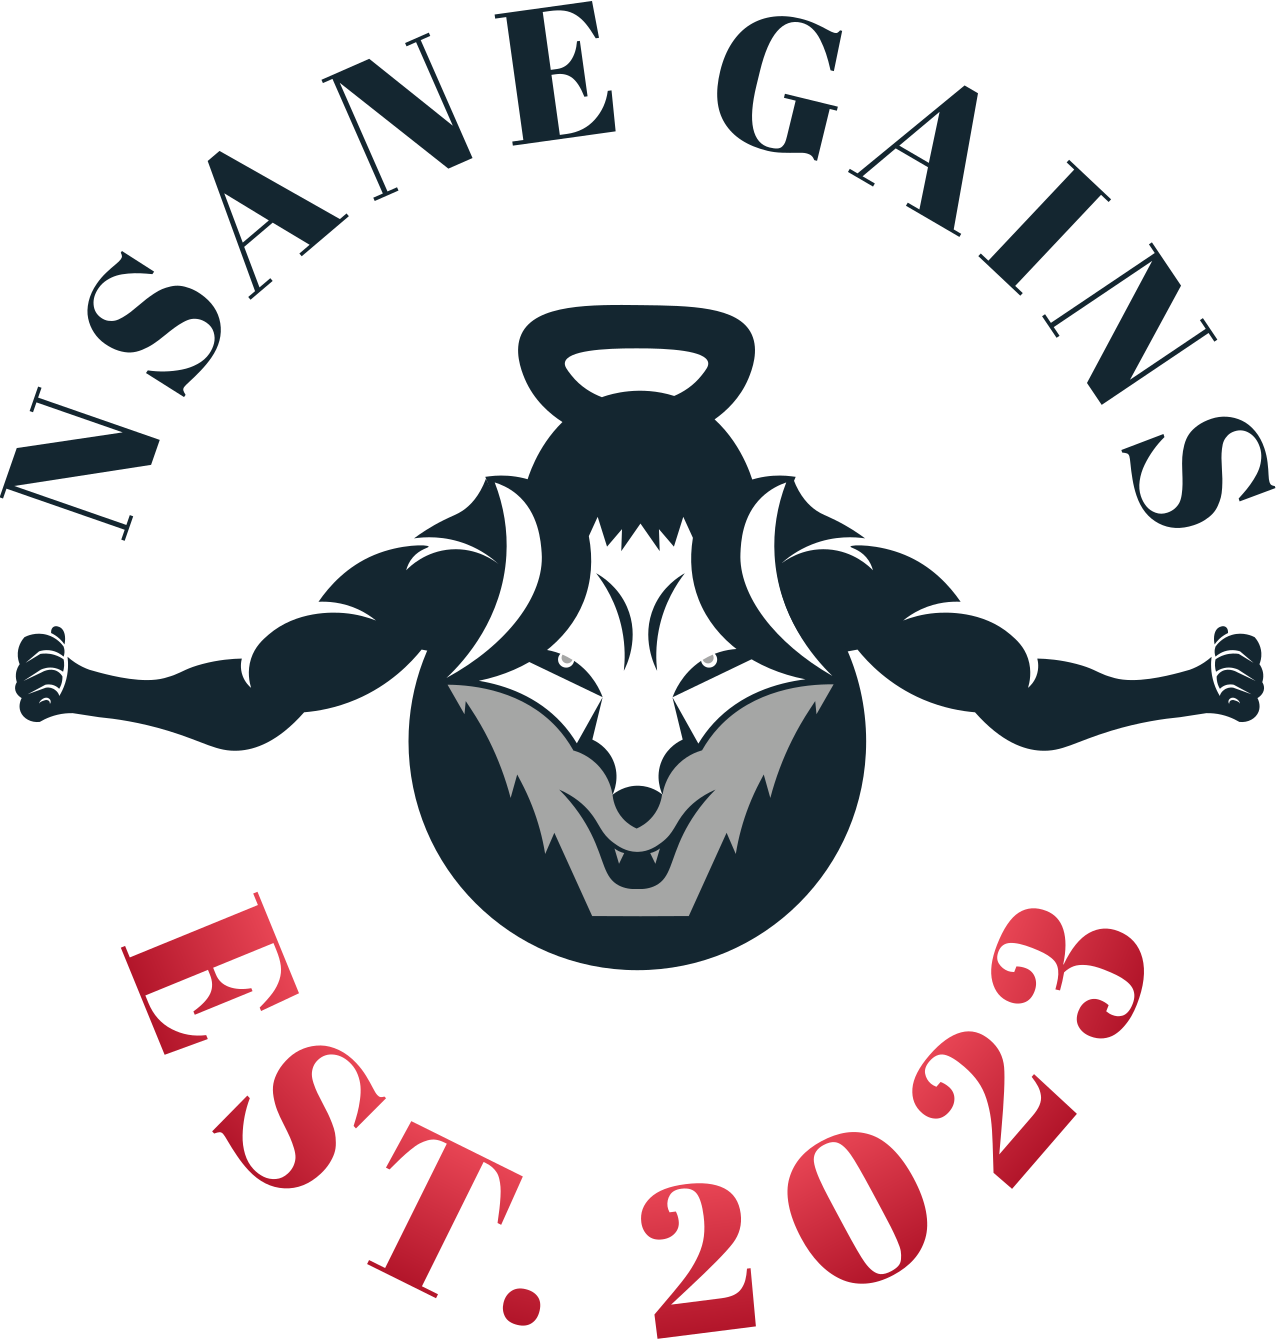 NSANE GAINS's logo